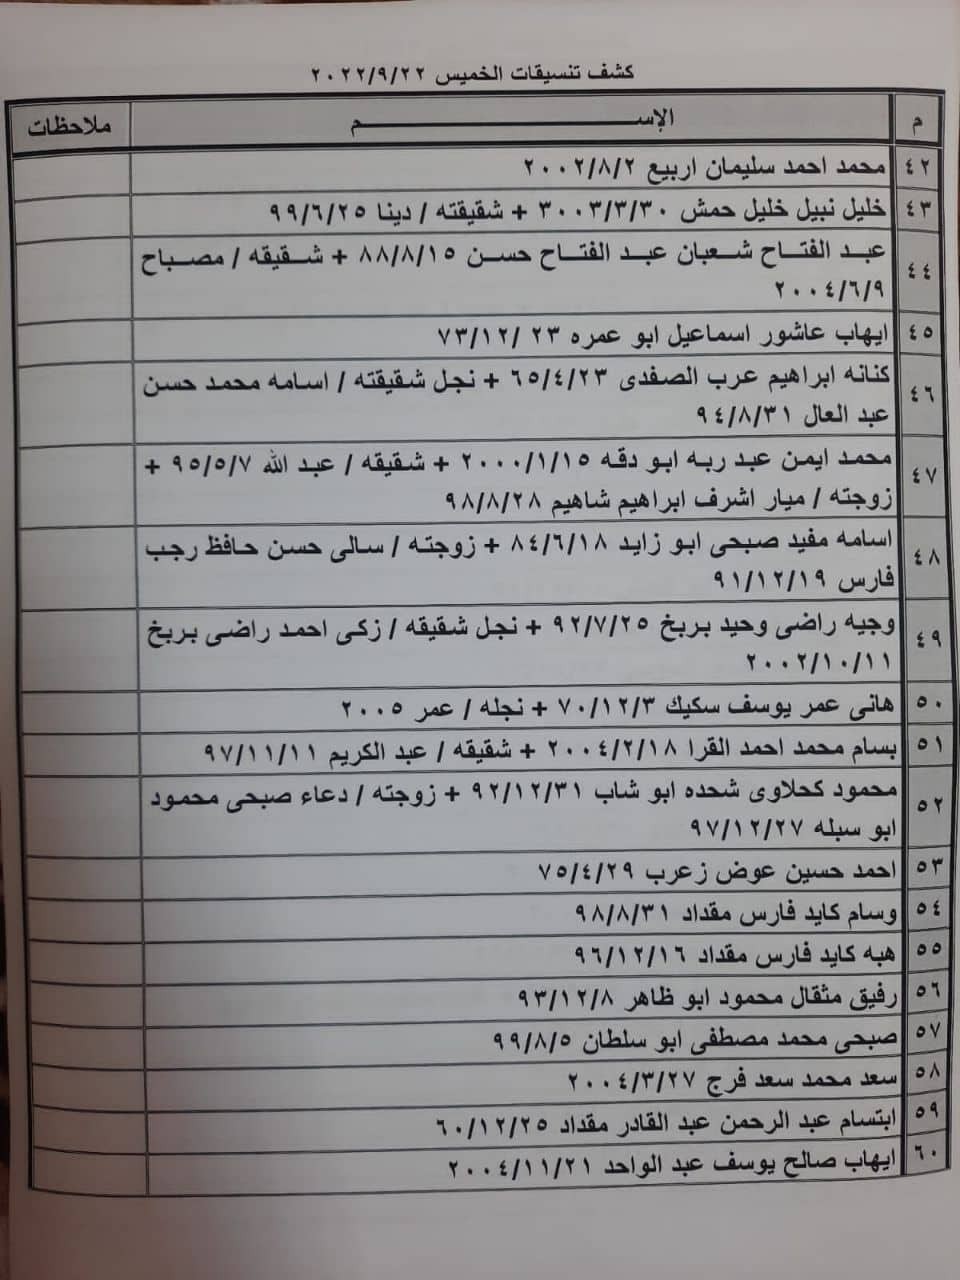 بالأسماء كشف "تنسيقات مصرية" للسفر عبر معبر رفح الخميس 22 سبتمبر 2022